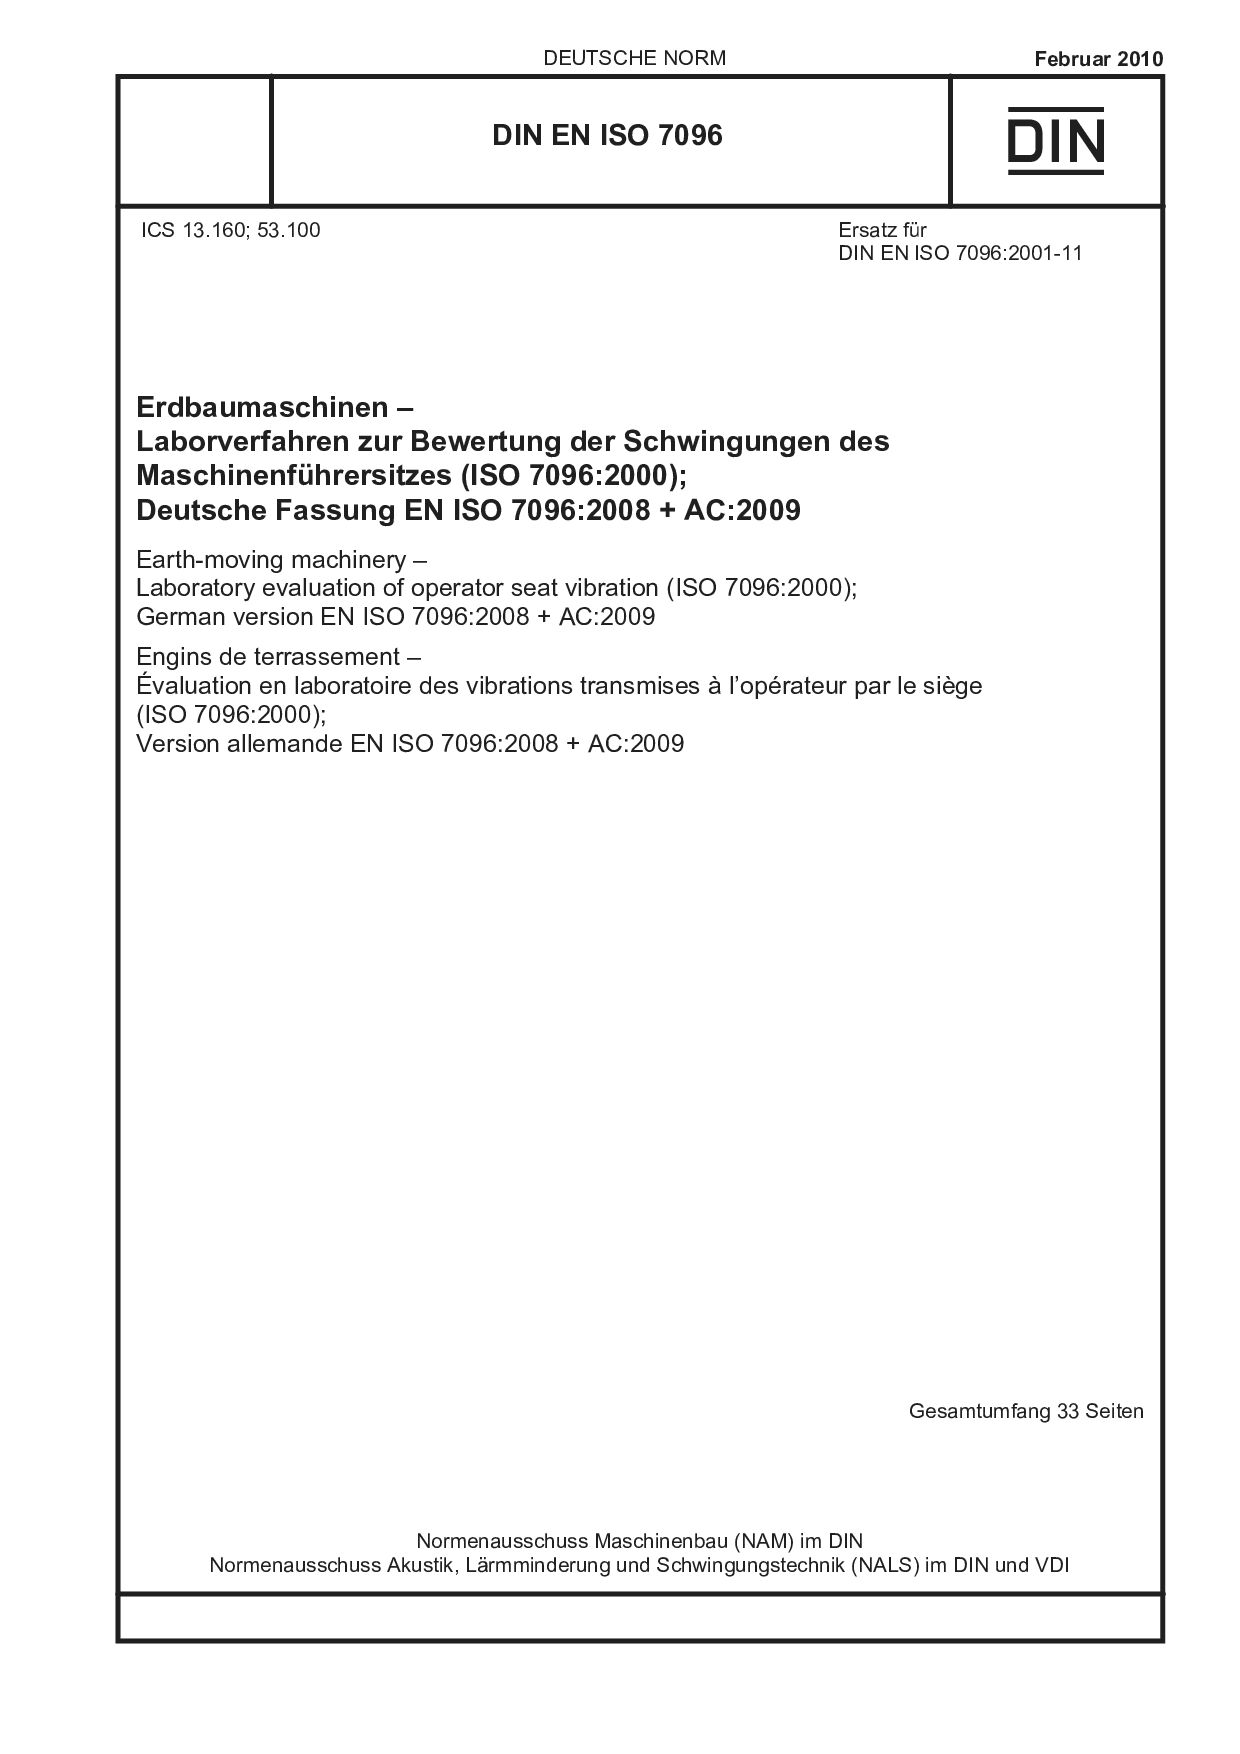 DIN EN ISO 7096:2010